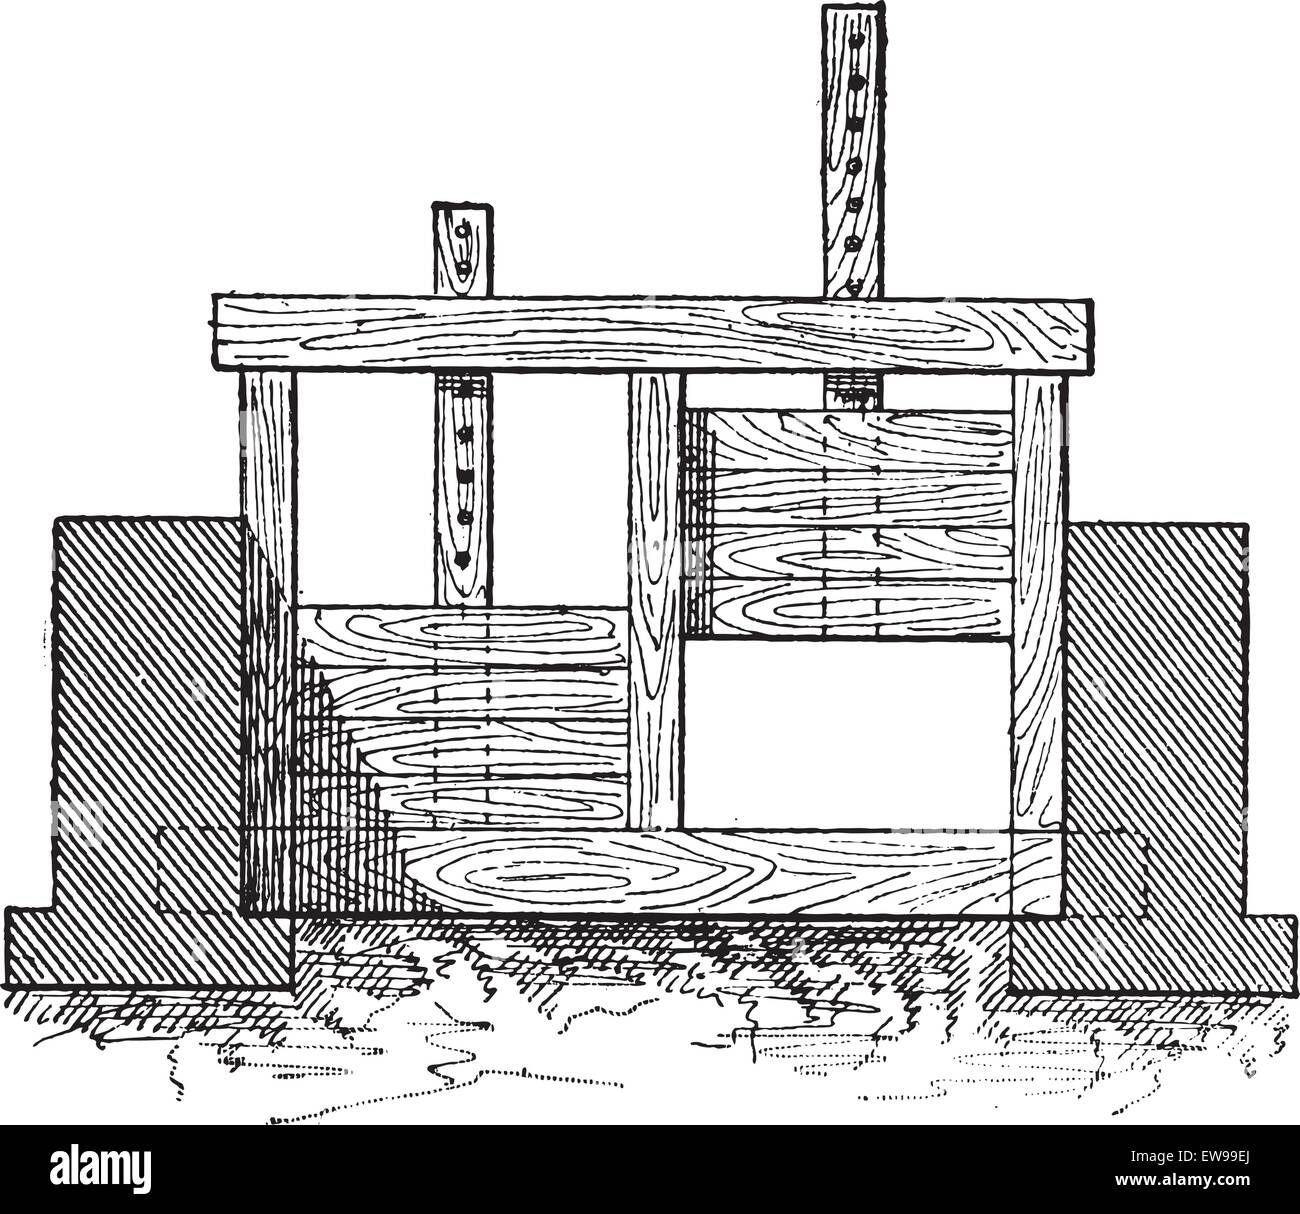 Porte en bois, illustré en position abaissée pour restreindre le débit d'eau (à gauche) et en position relevée pour permettre l'écoulement des eaux, vintage e Illustration de Vecteur